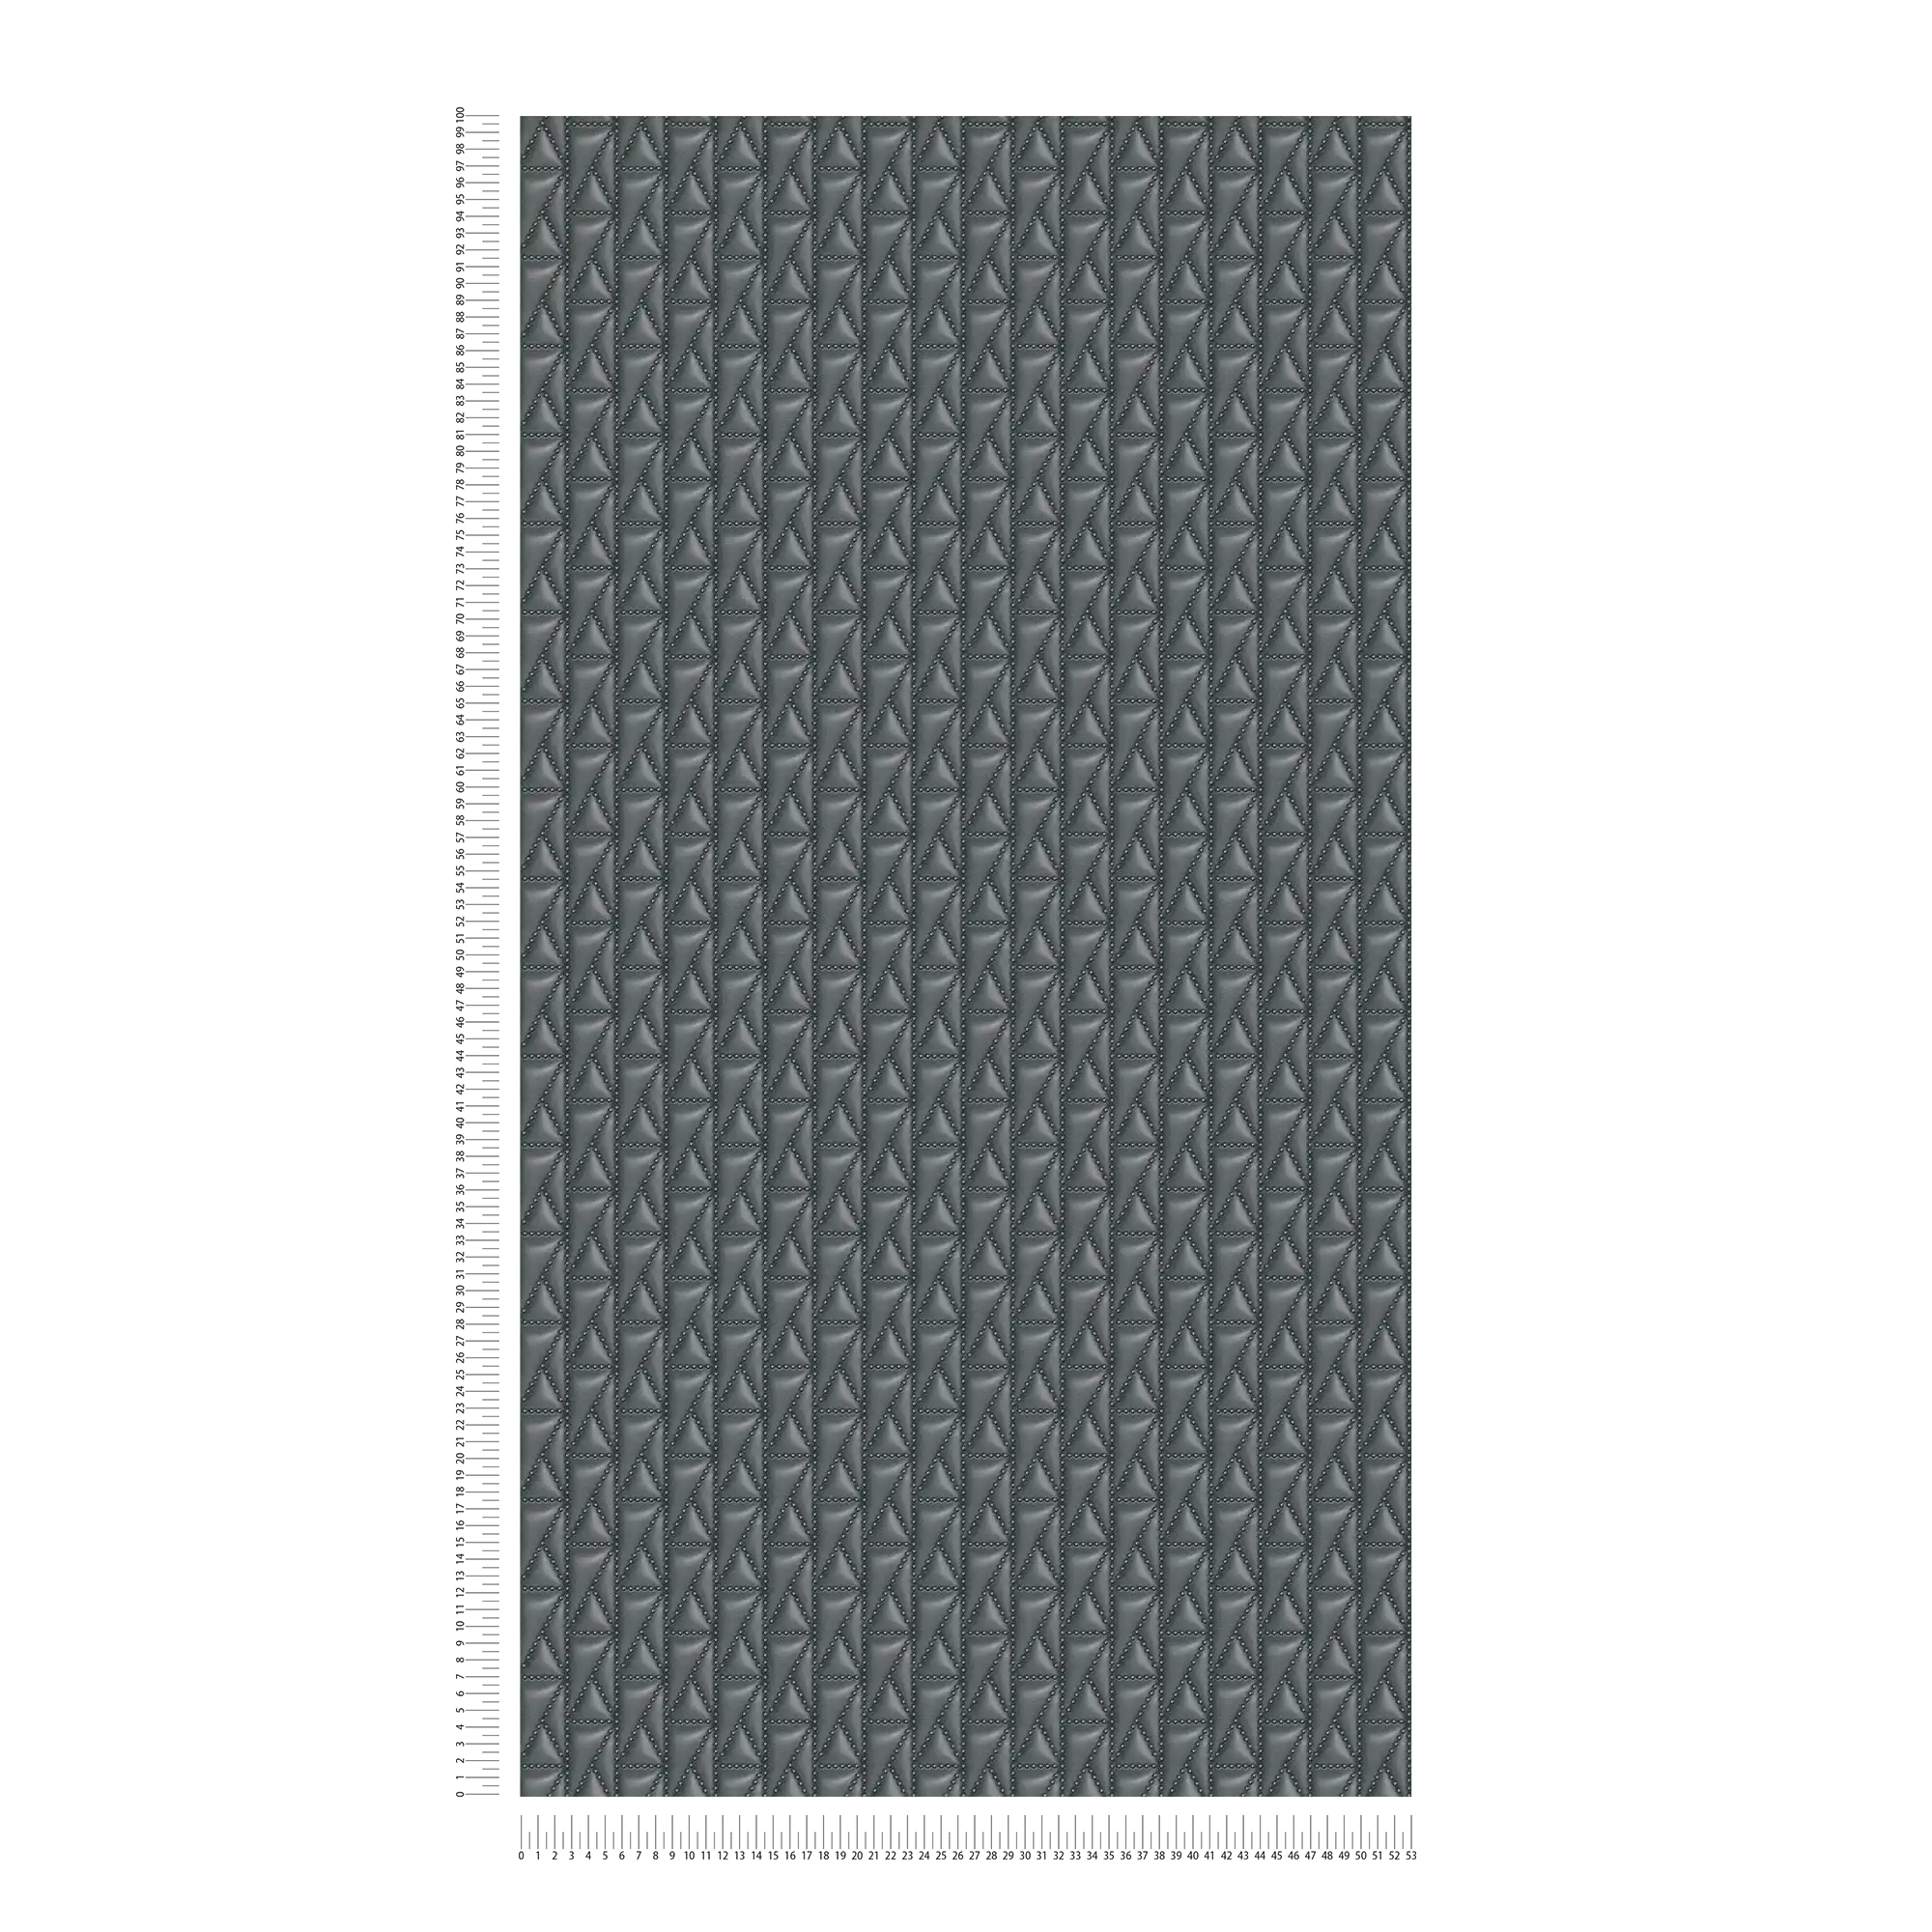             Wallpaper Karl LAGERFELD quilt bags design - Black
        